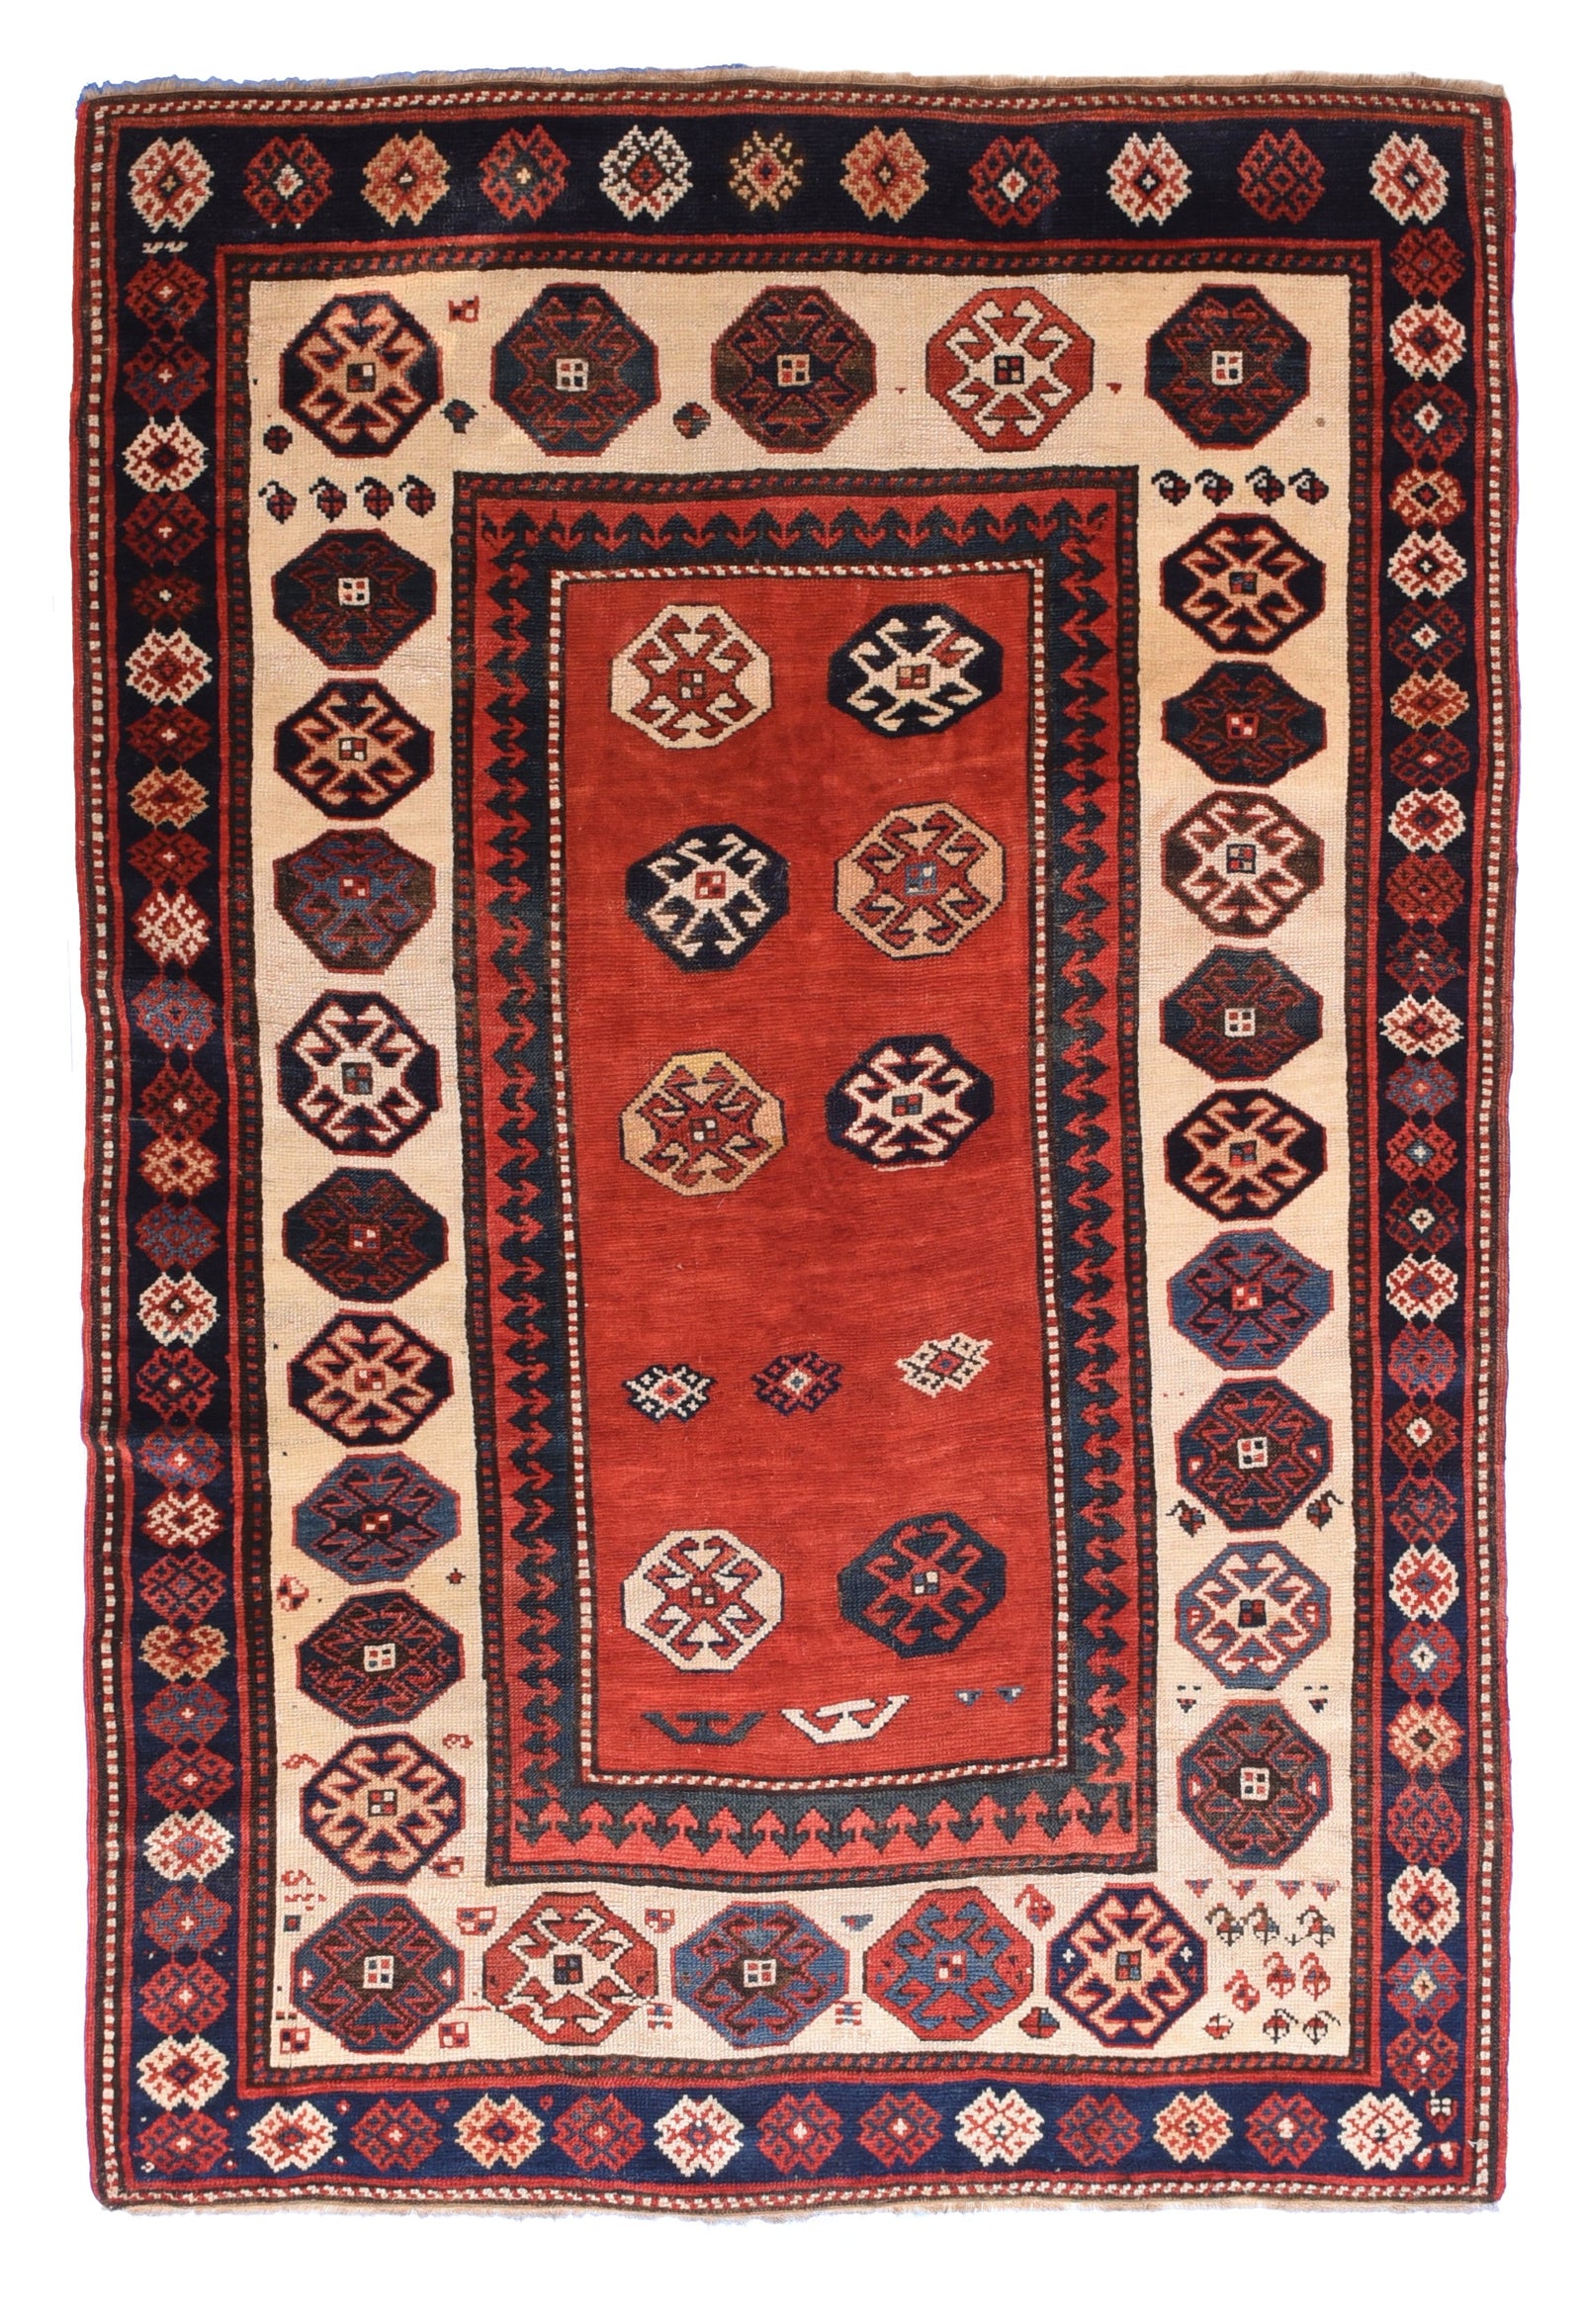 Antique Red Kazak Russain Area Rug